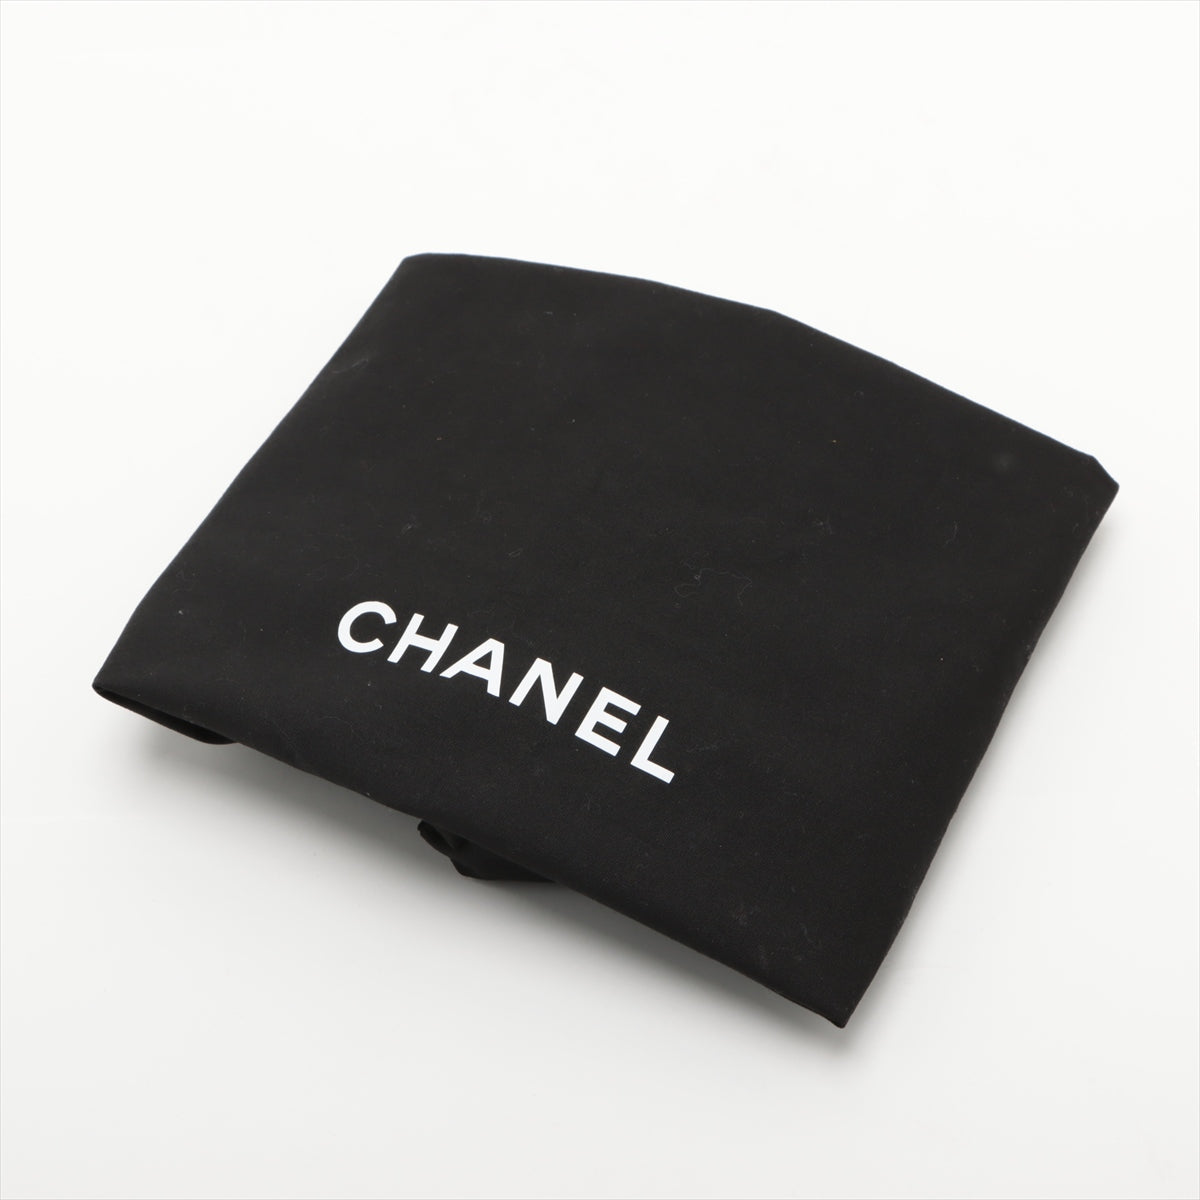 Chanel 19  Chain Shoulder Bag Black Gold  AS1160